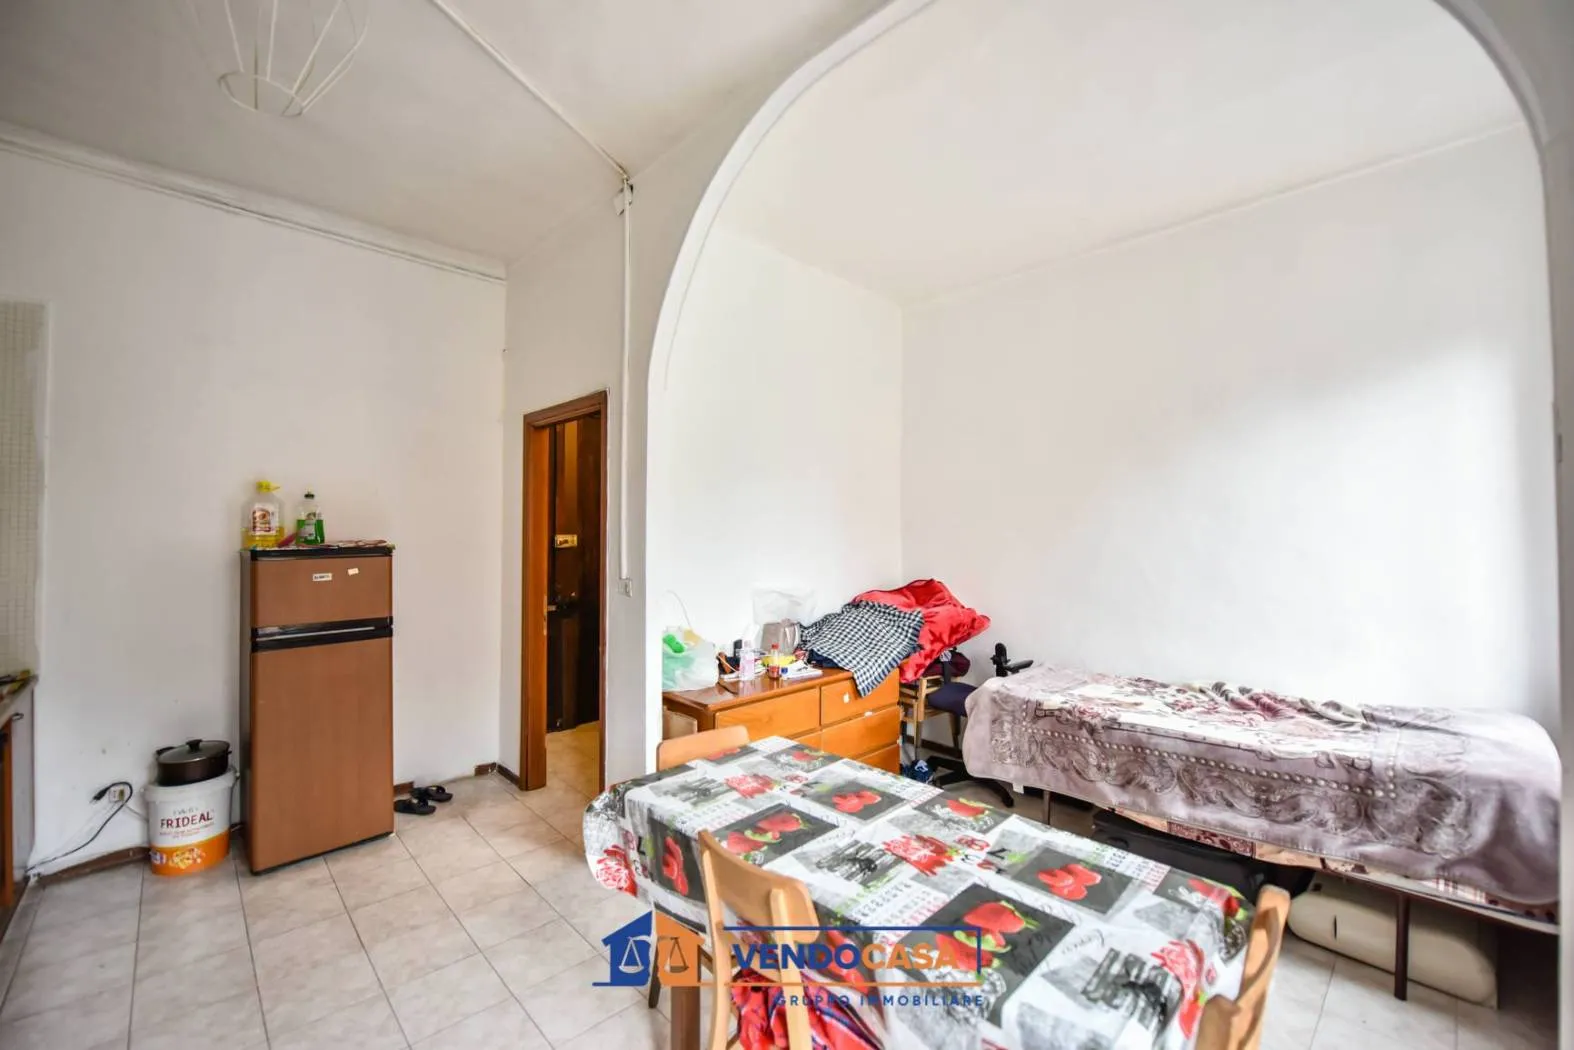 Immagine per Appartamento in Vendita a reddito a Torino Corso Giulio Cesare 136